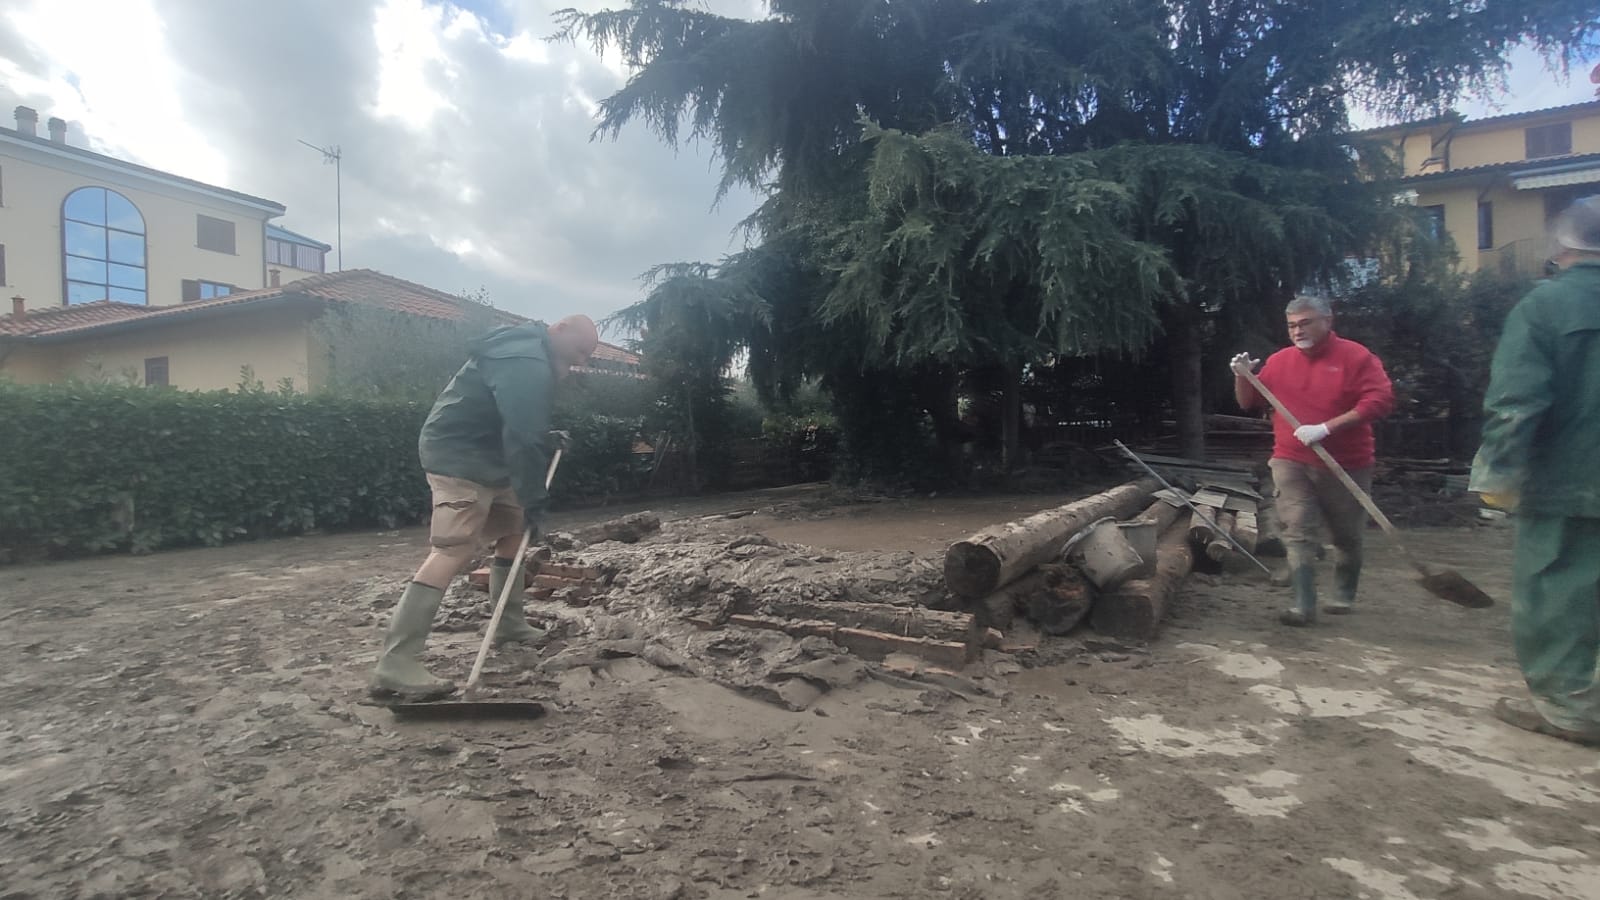 🎧 Alluvione: dopo l’acqua, fango e rifiuti le nuove emergenze in Toscana